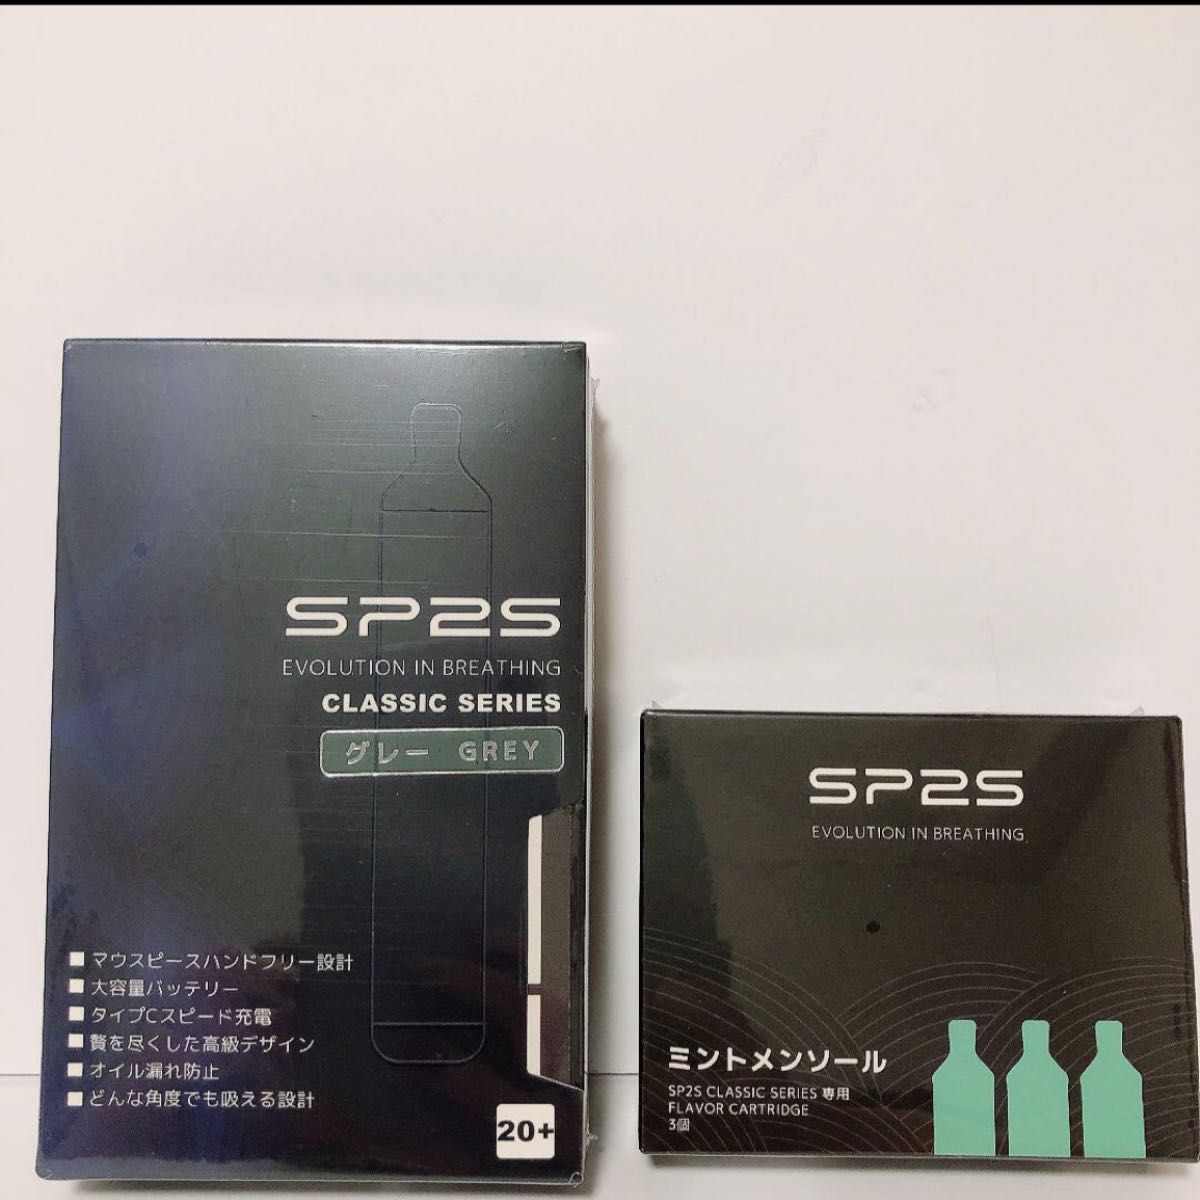 新品電子タバコ SP2S VAPE ベイプ スターターキット セット メンソール